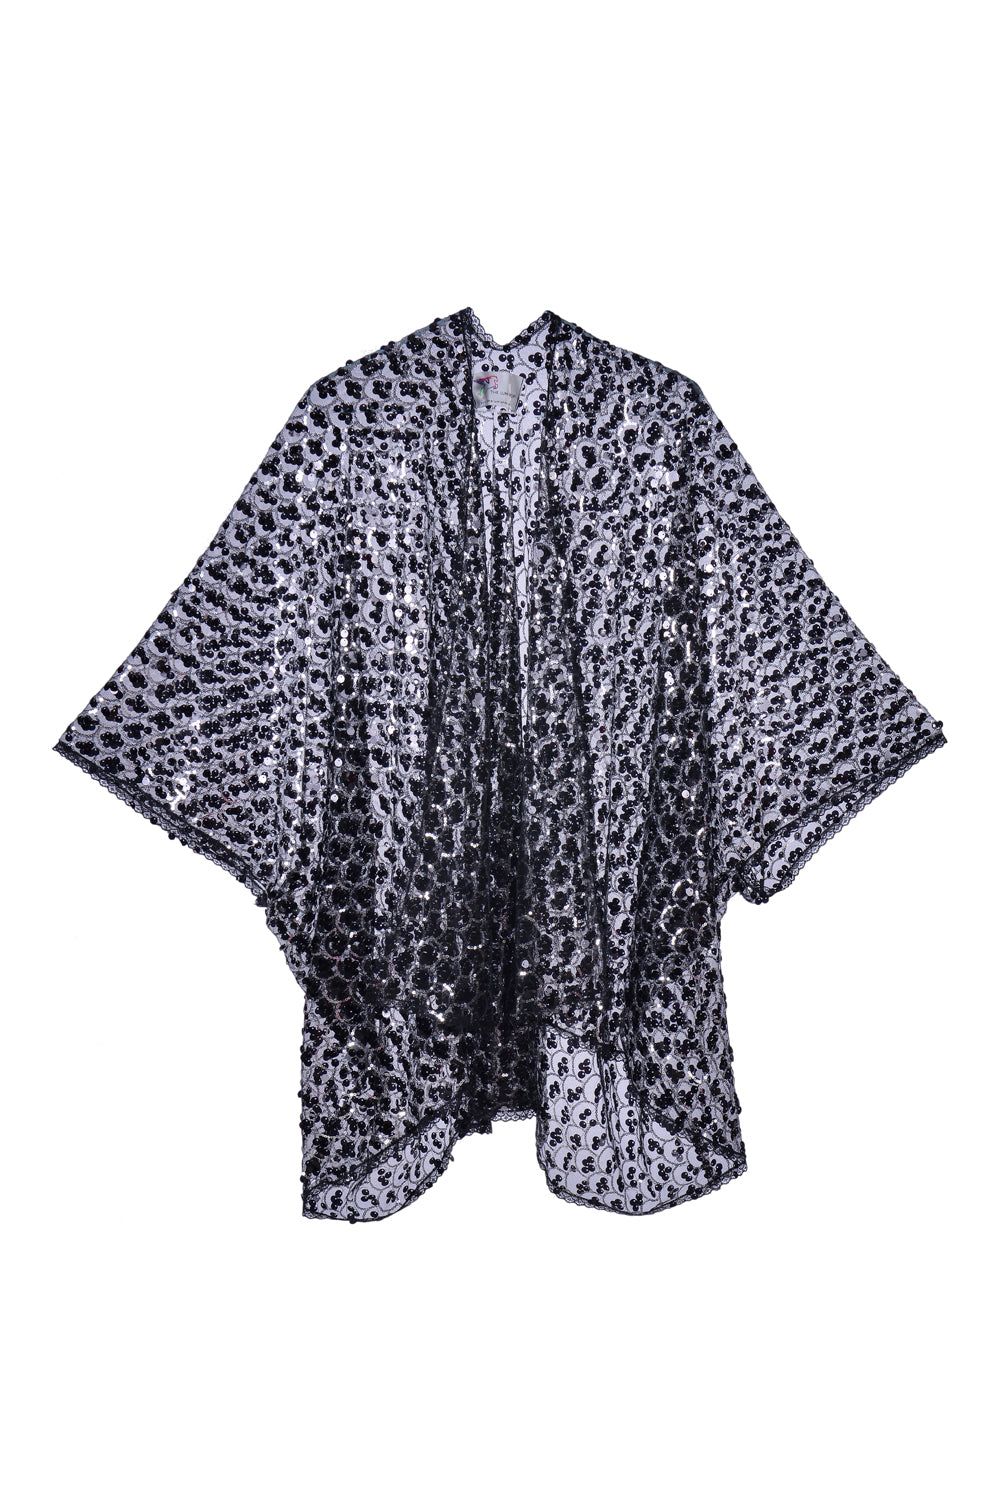 Sequin Kimono- Black Treasure